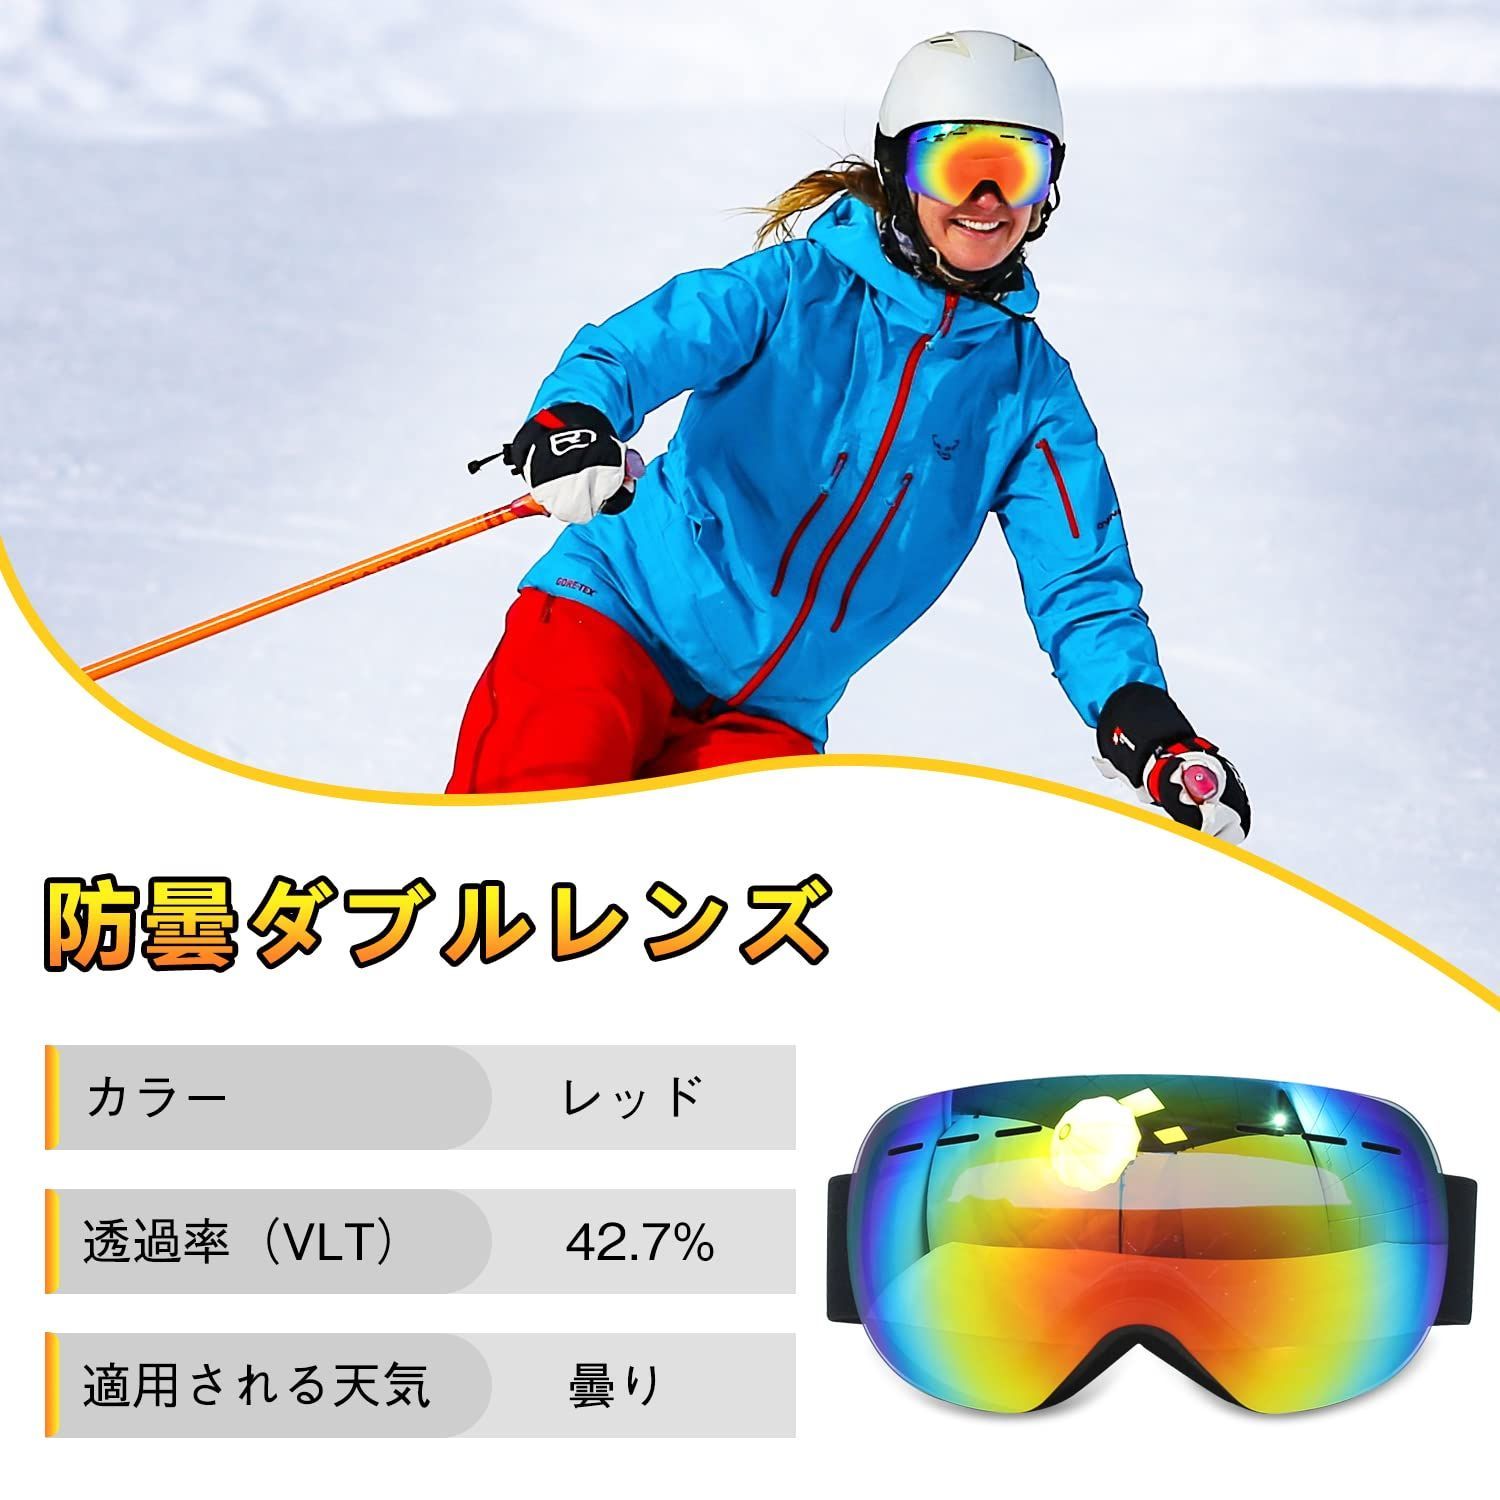 Mixiu スキーゴーグル 球面レンズ フレームレス スノーゴーグル 広角視野 UV400保護 紫外線99%カット 防曇 メガネ着用可 ヘルメット対応  滑り止めベルト クリーニングクロス付き 収納袋 収納ケース 男女兼用 - メルカリ